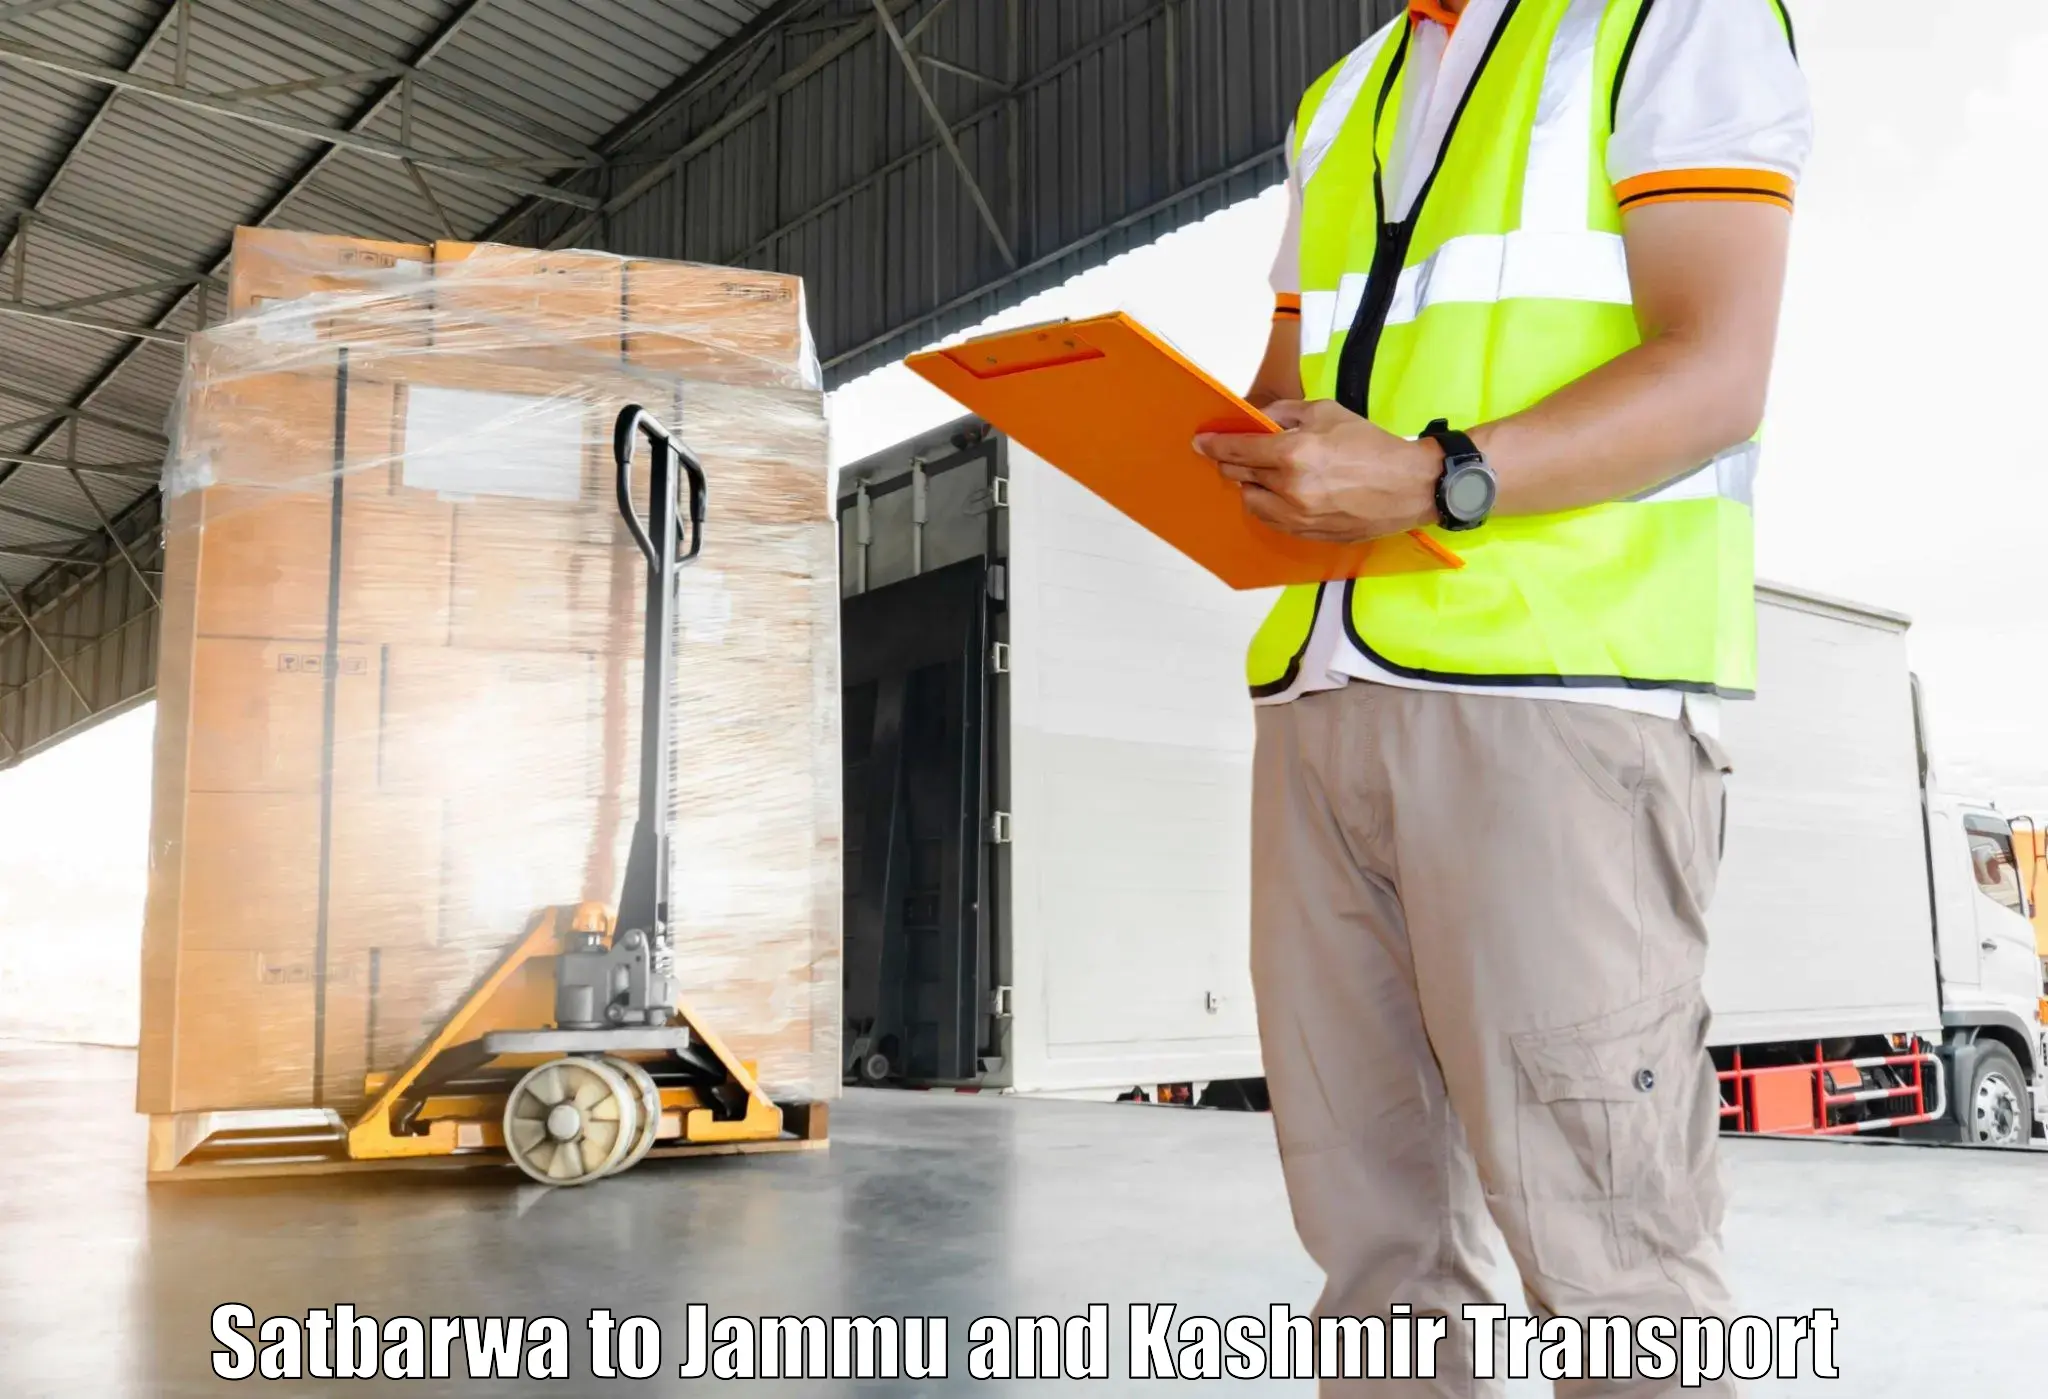 Luggage transport services Satbarwa to Ramban